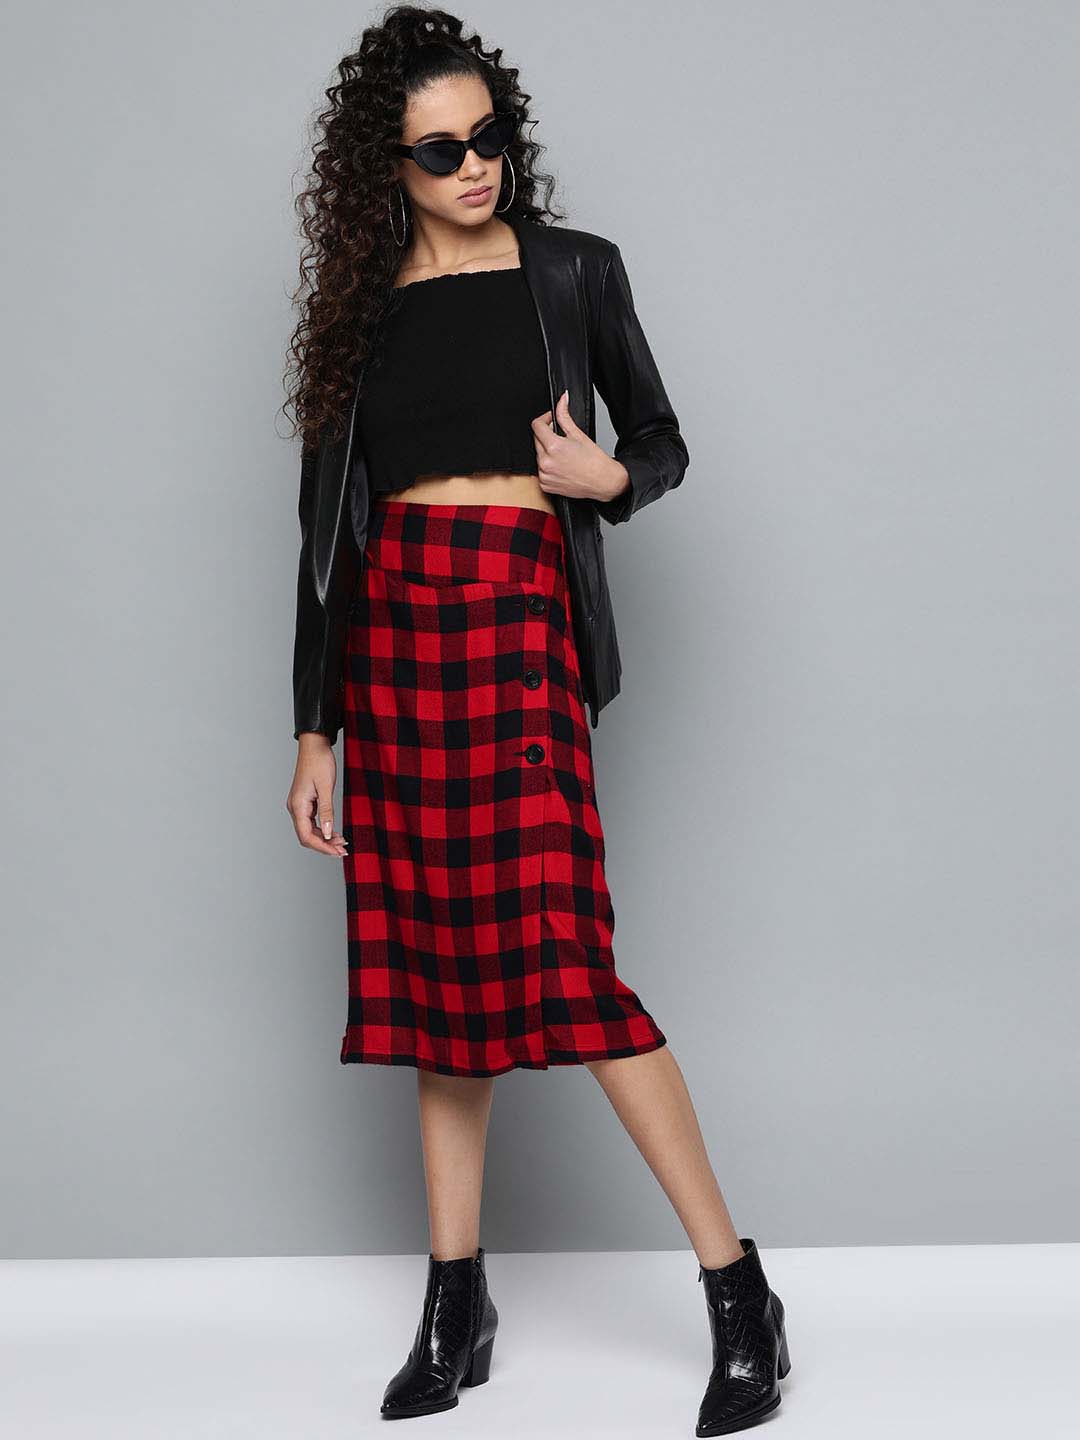 Dream of the '90s Black Suspender Skirt